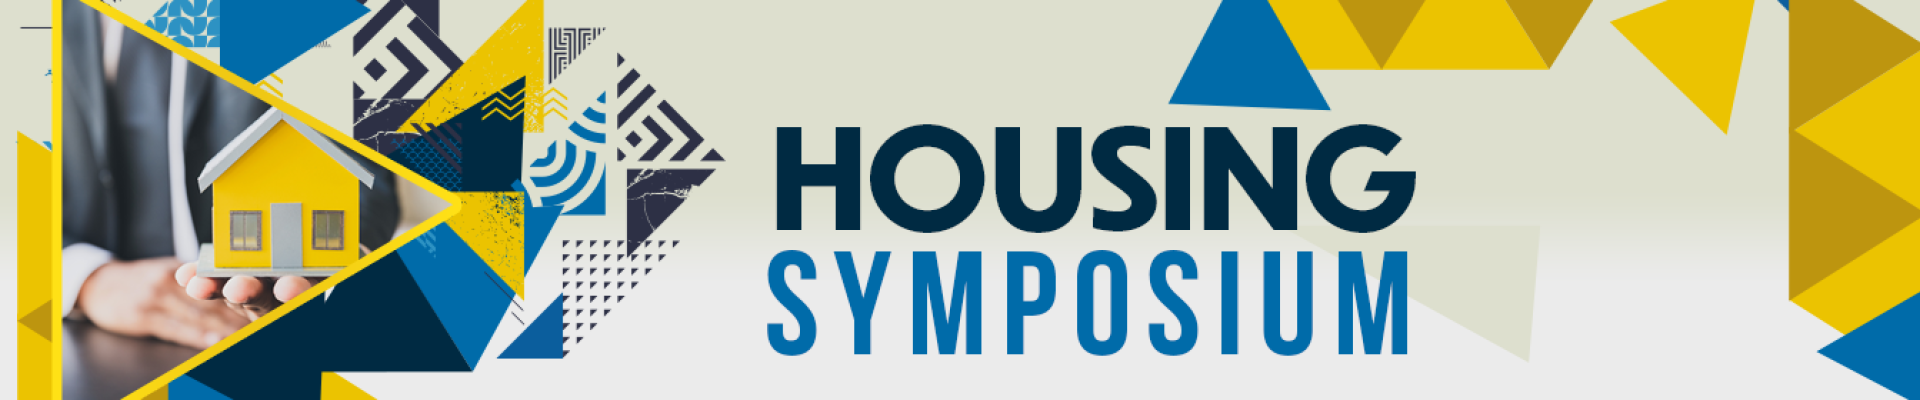 Graphic for Housing Symposium